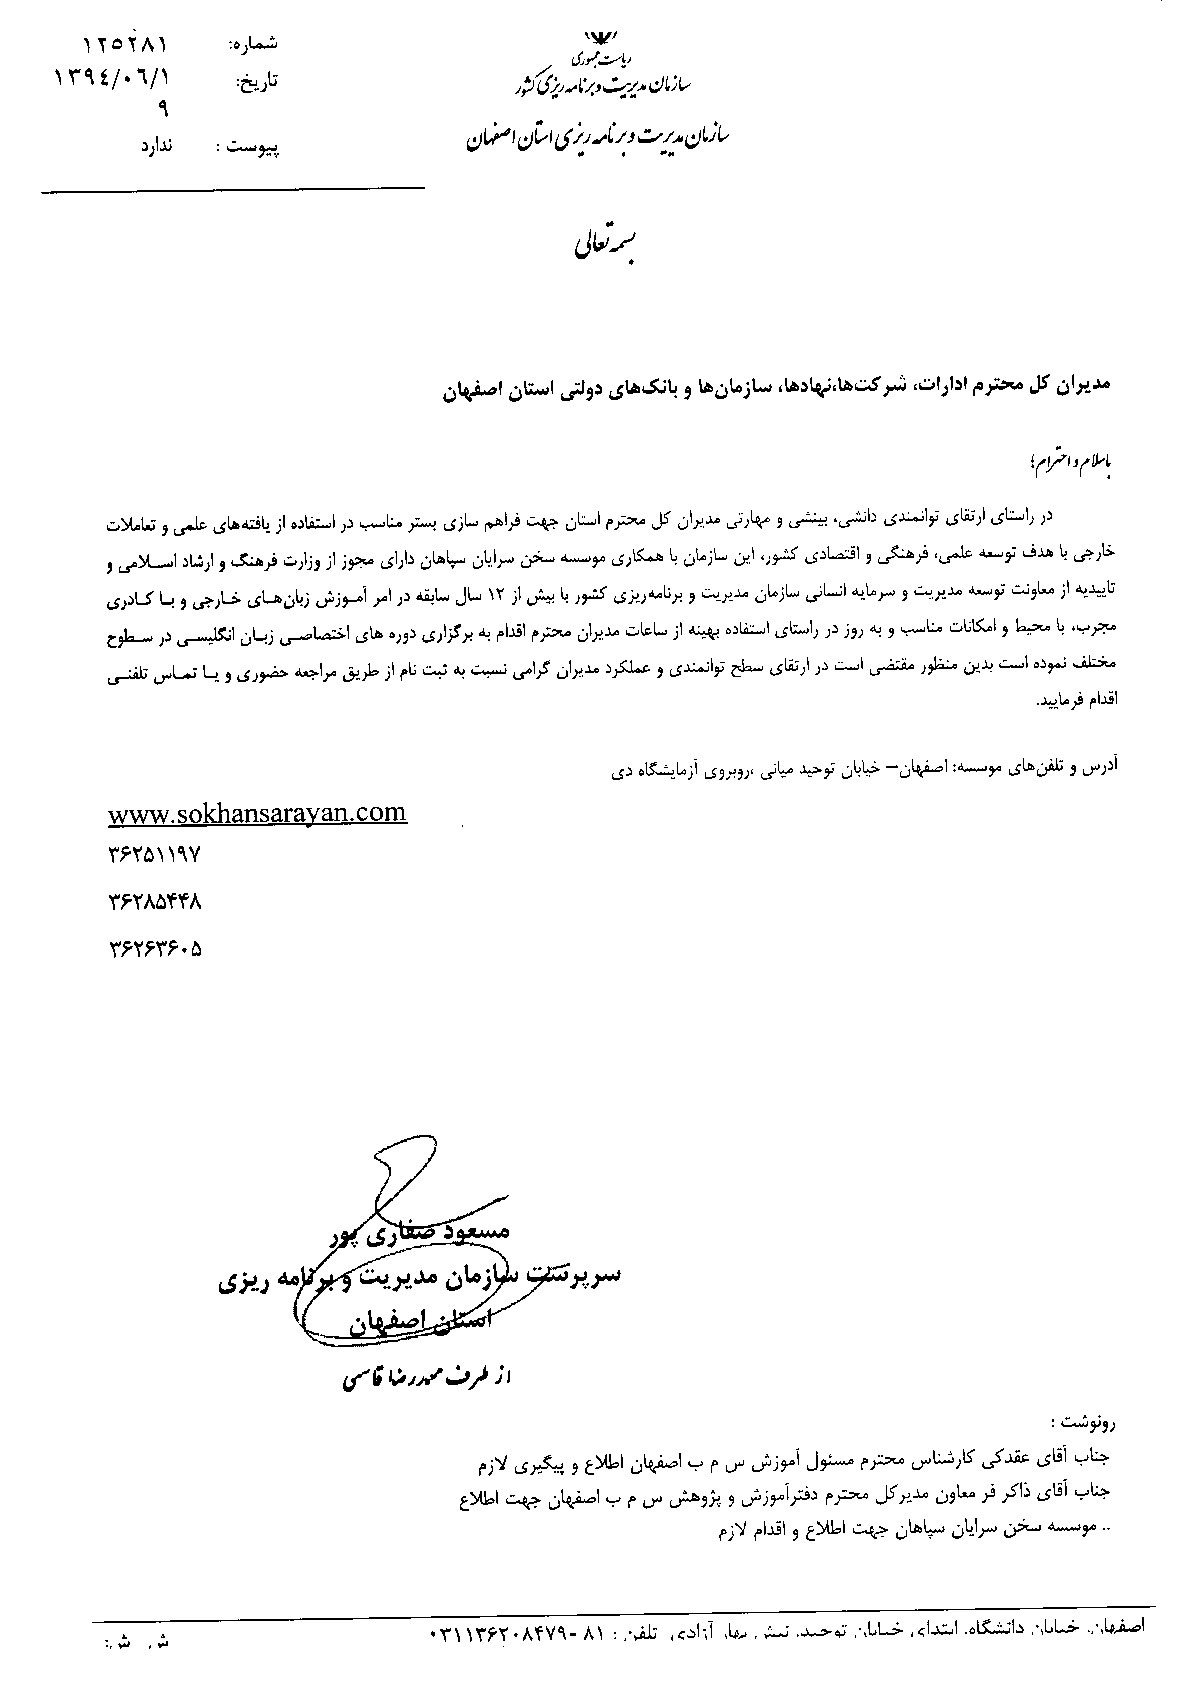 مجوز از استانداری جهت آموزش کارکنان دولتی در اصفهان